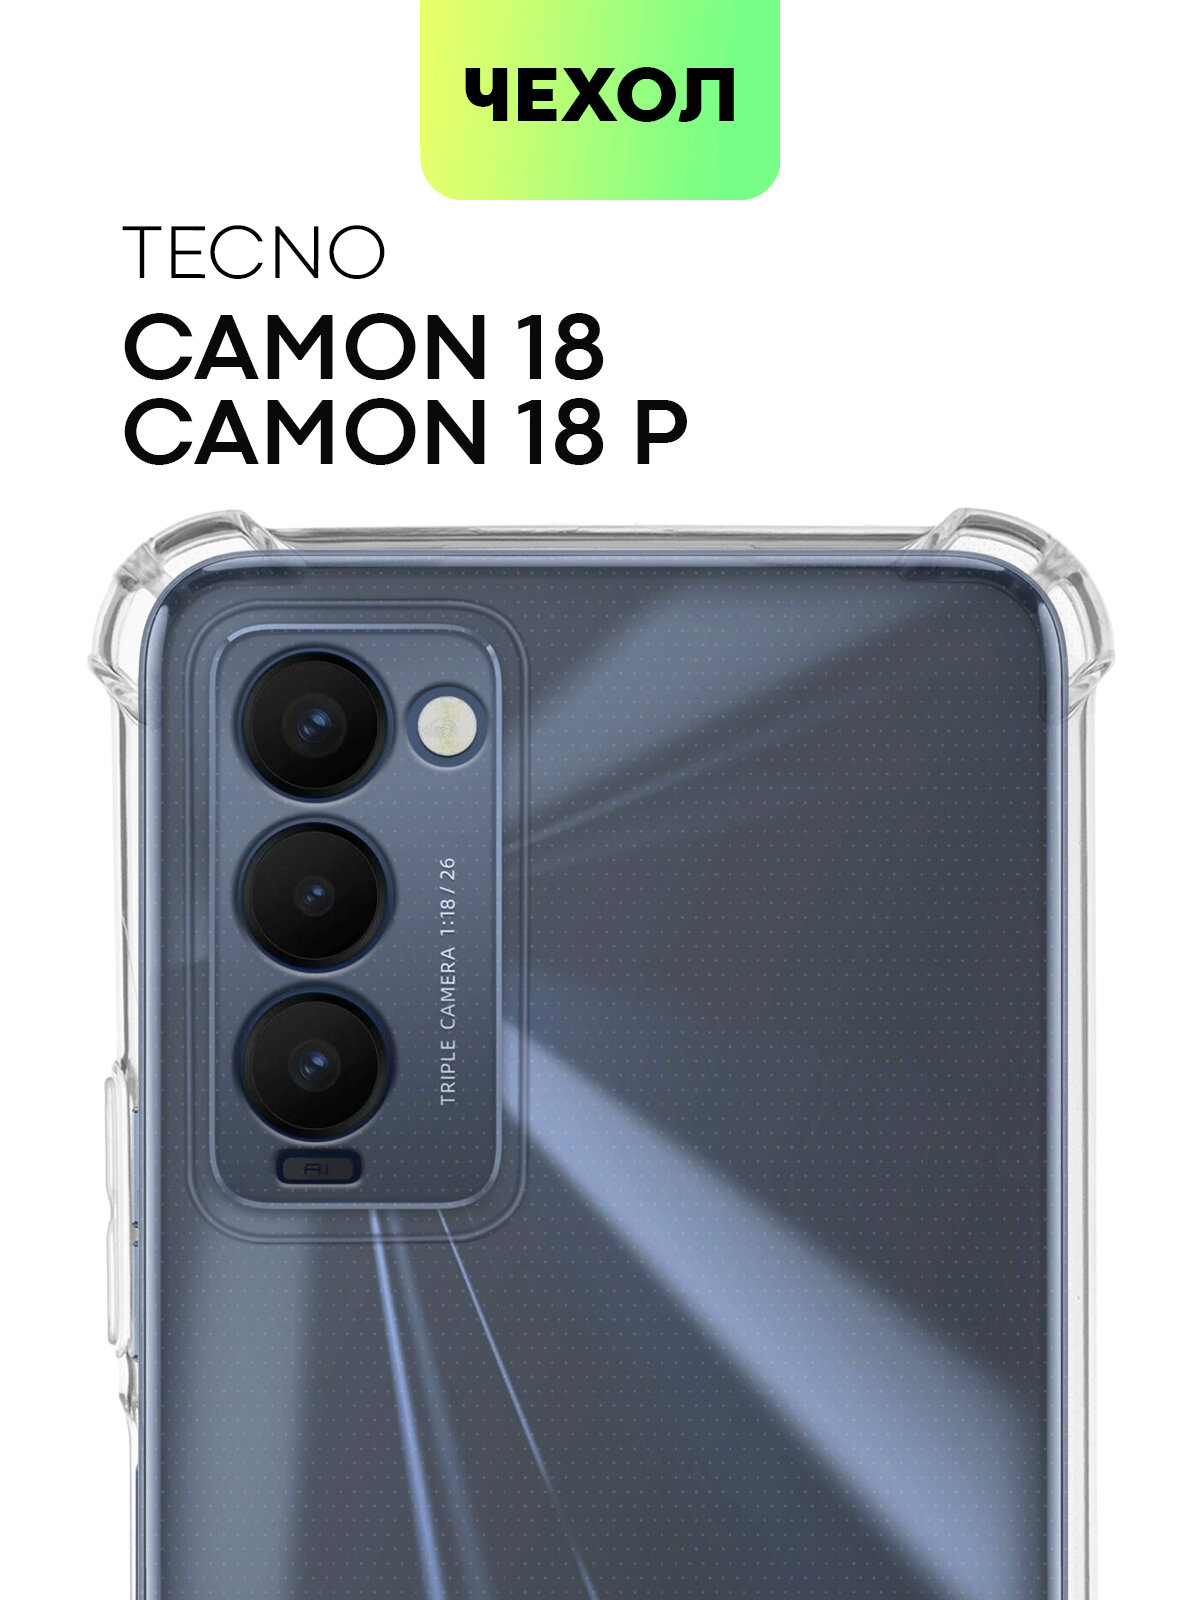 Противоударный чехол для Tecno Camon 18, Tecno Camon 18P (Техно Камон 18, Камон 18П) усиленный, защита модуля камеры, прозрачный силиконовый